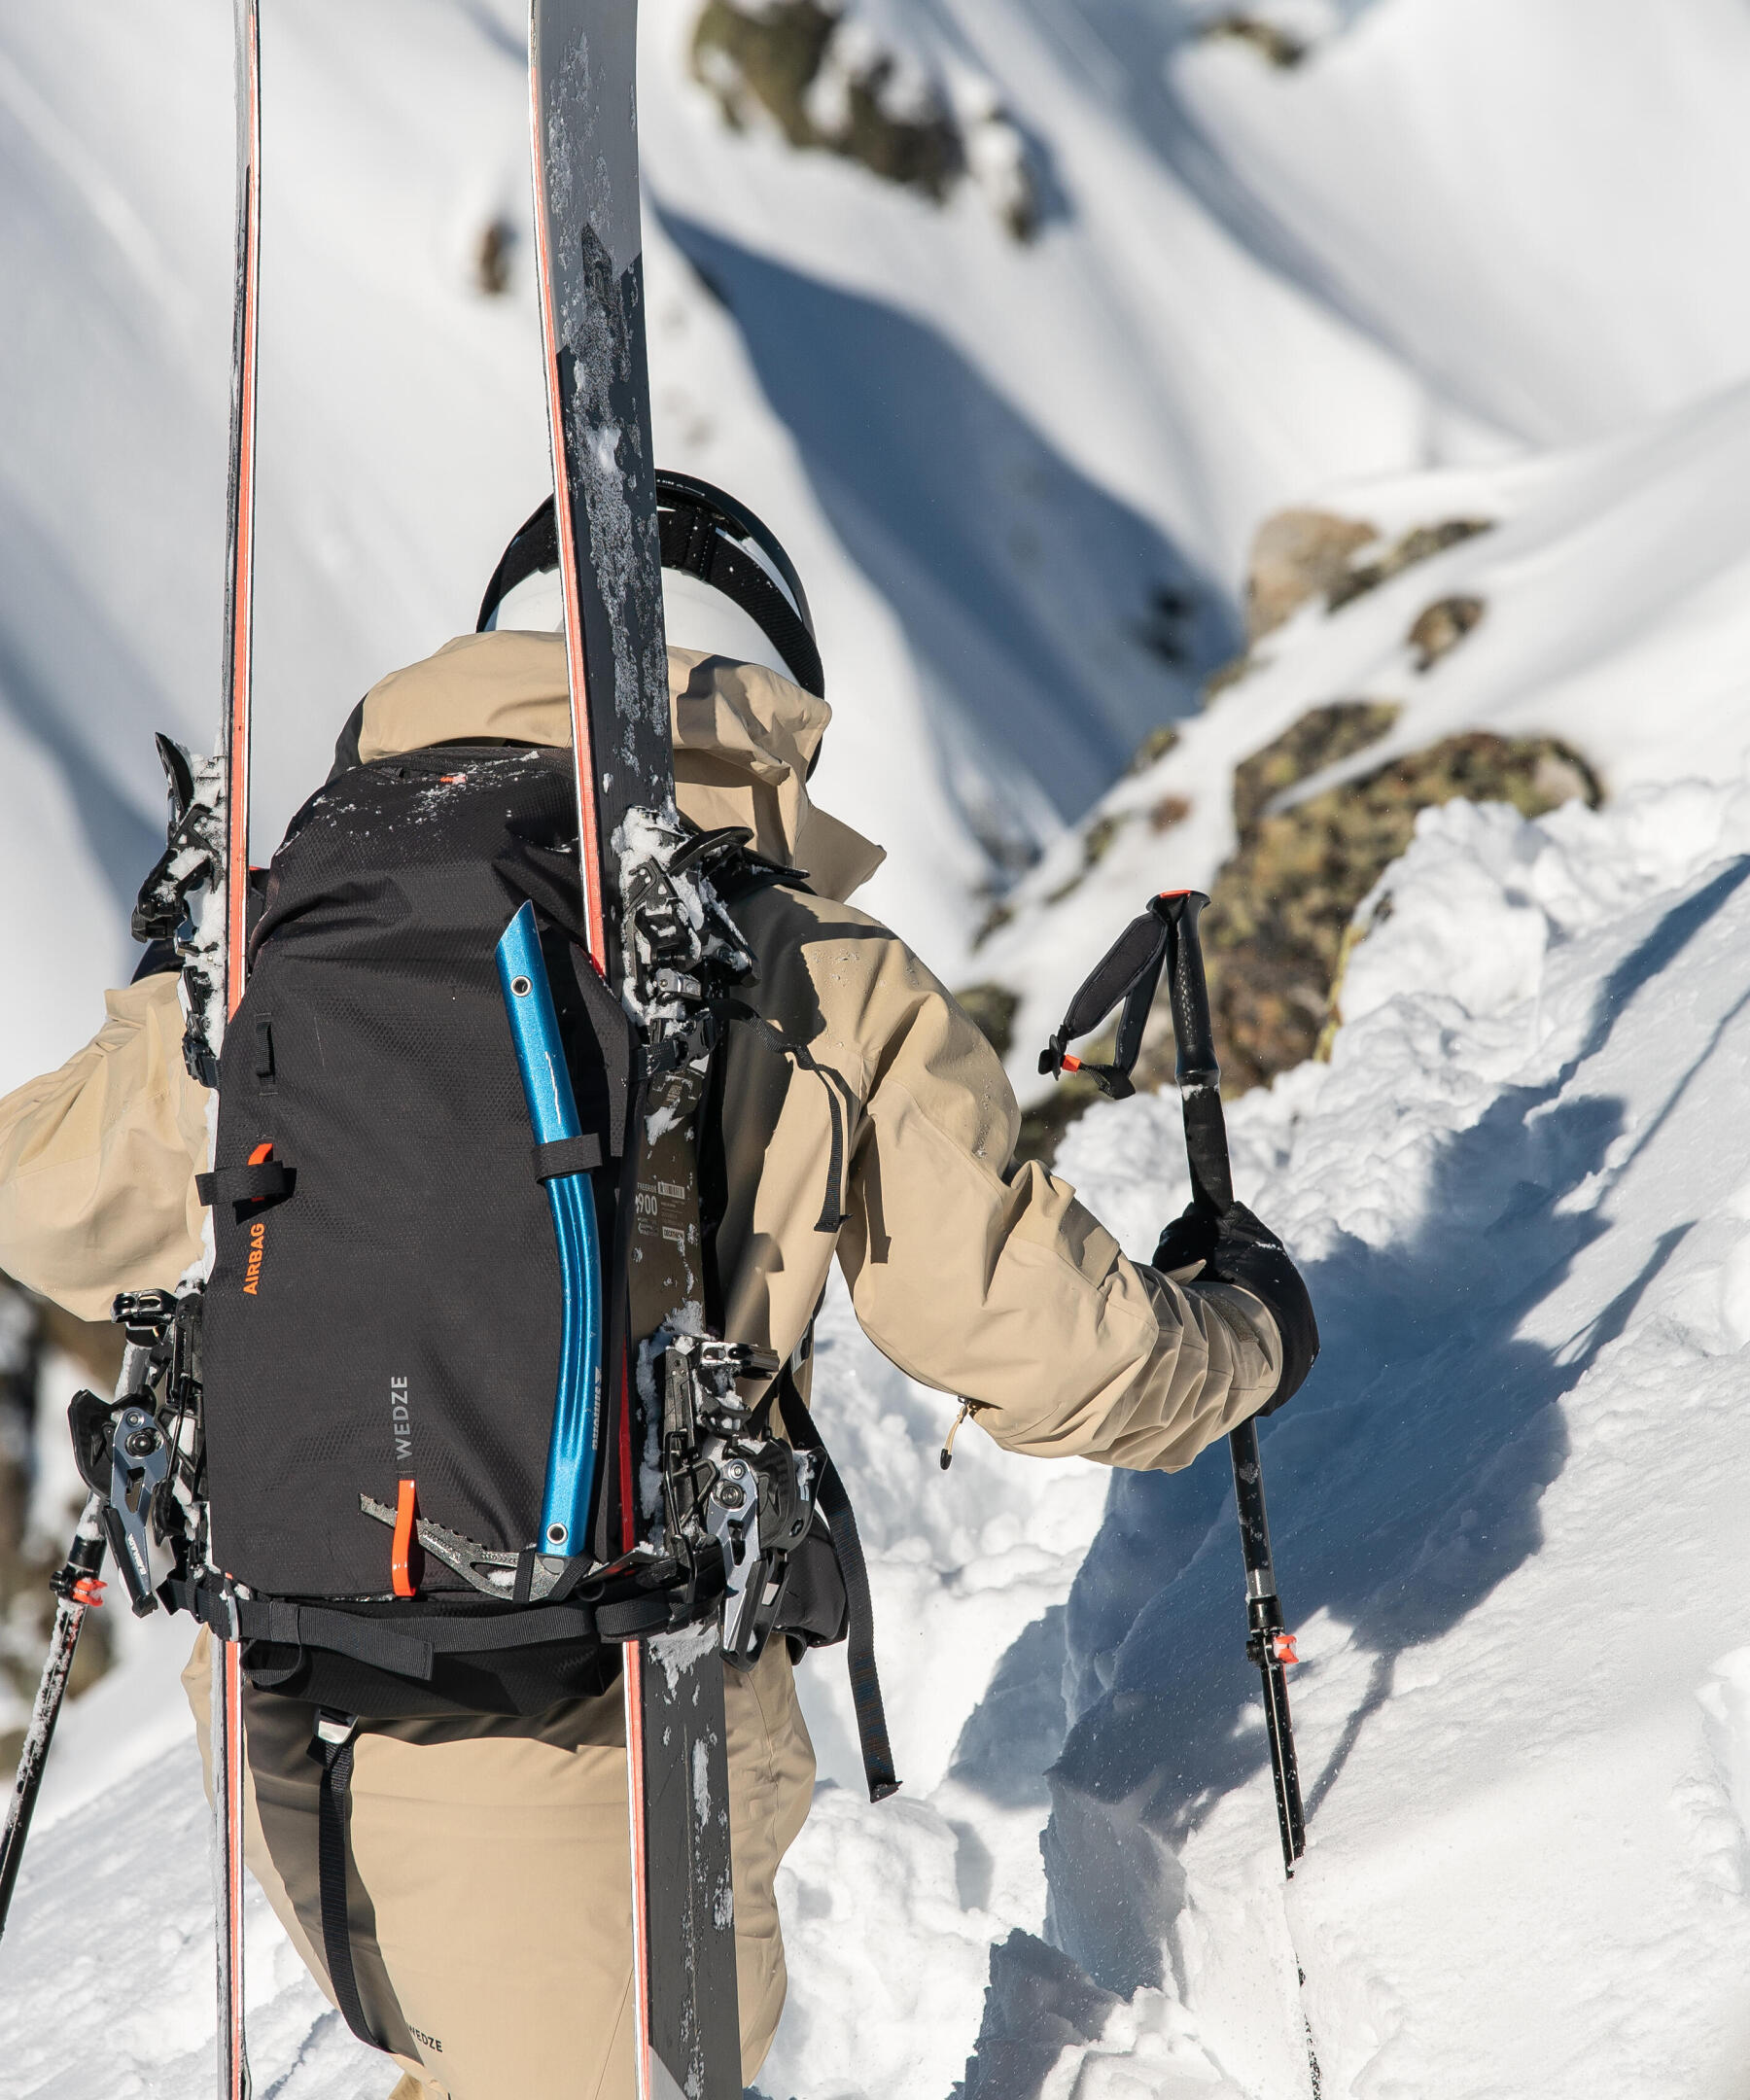 Comment attacher ses skis de randonnée sur son sac à dos ?